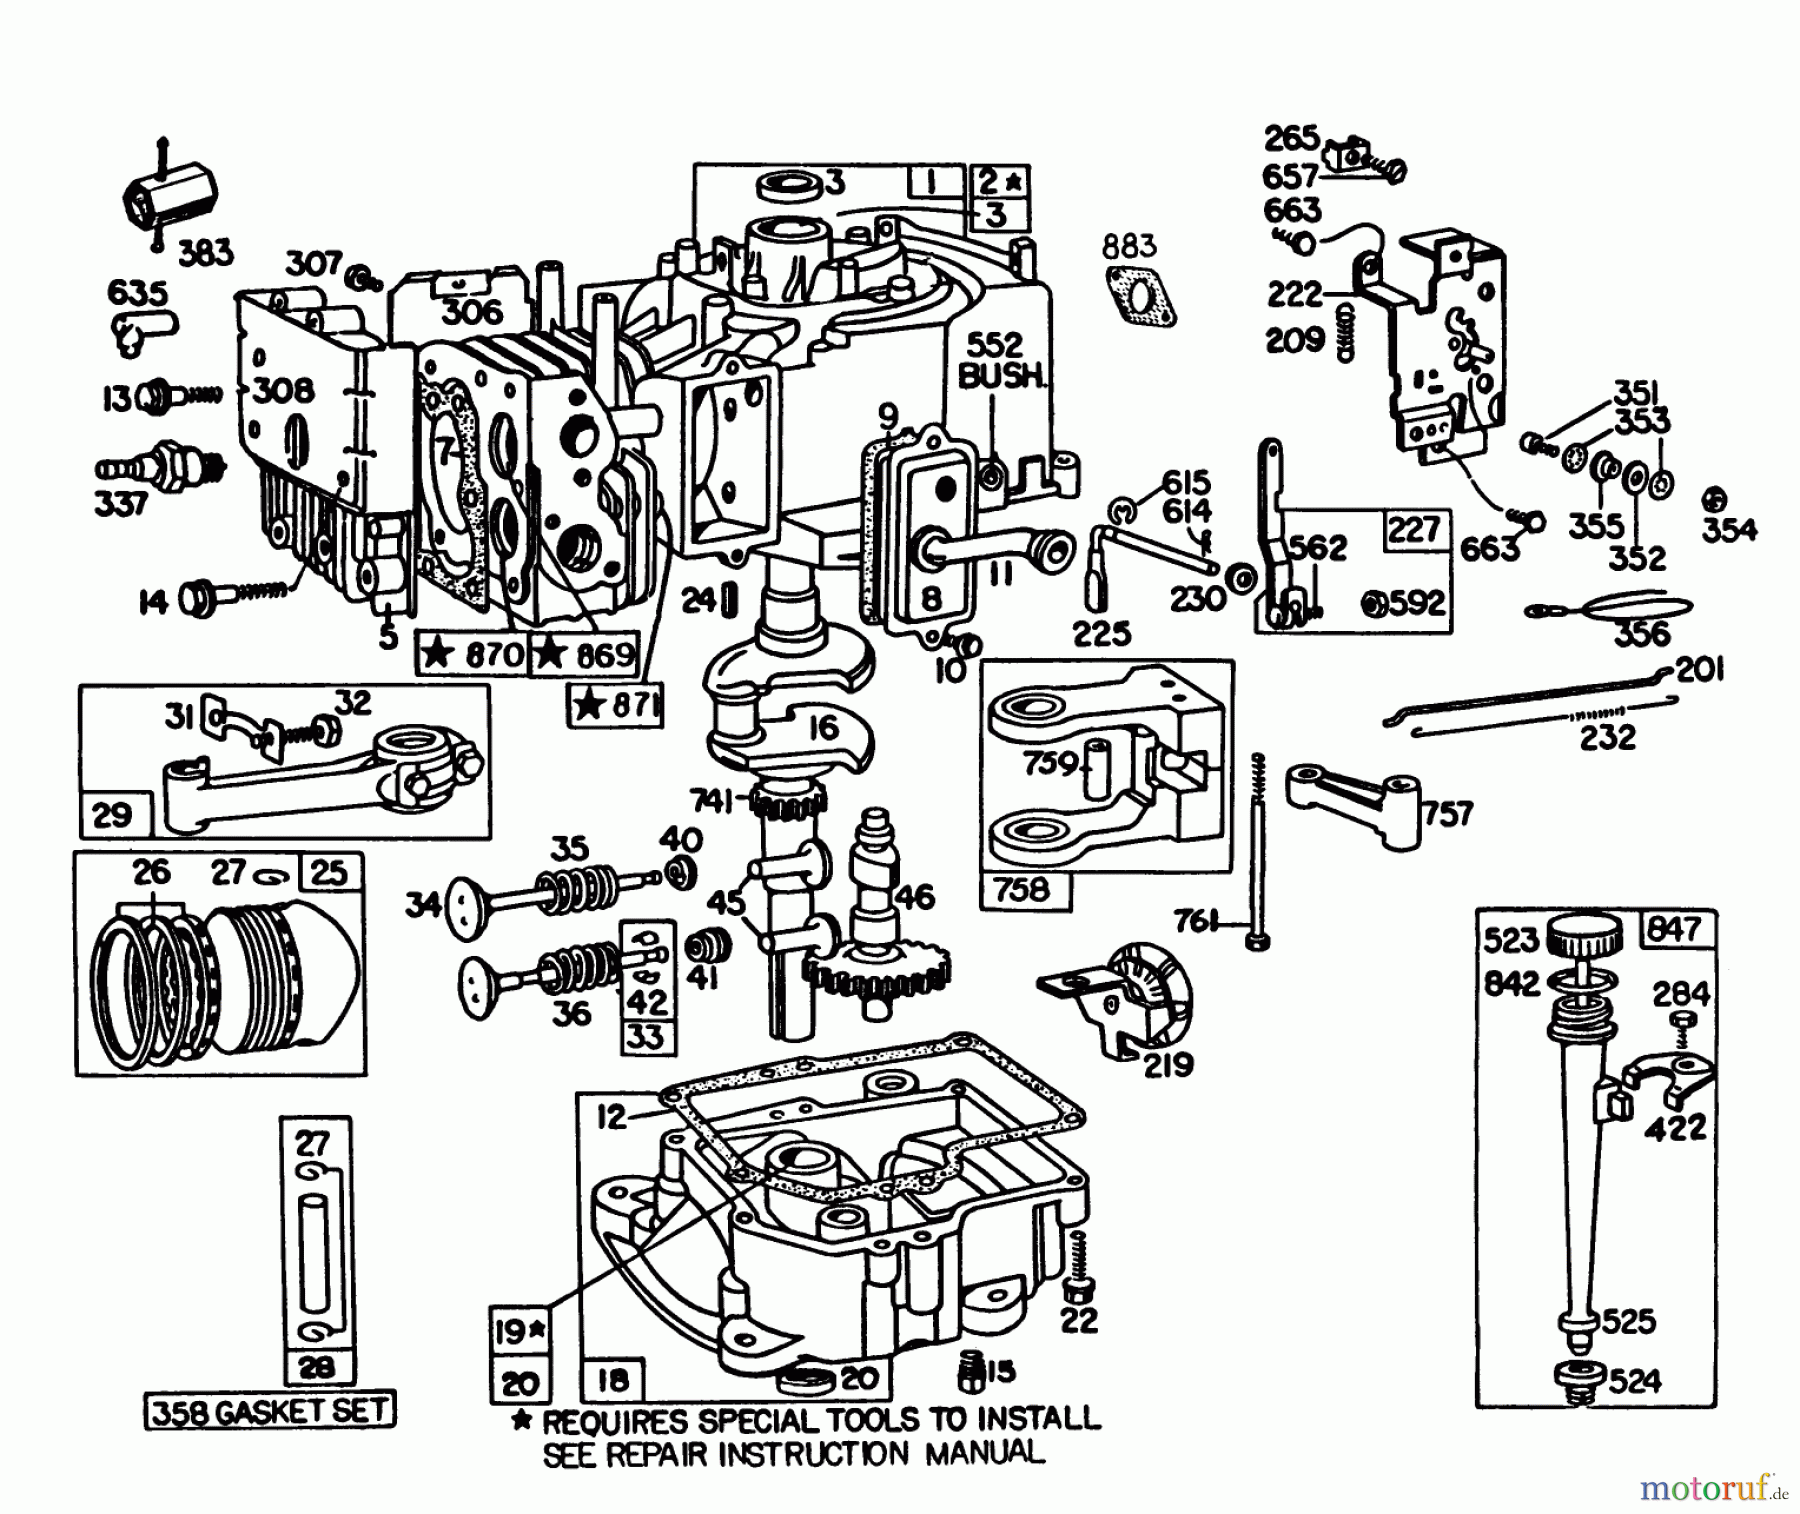  Toro Neu Mowers, Lawn & Garden Tractor Seite 1 57360 (11-32) - Toro 11-32 Lawn Tractor, 1984 (4000001-4999999) ENGINE BRIGGS & STRATTON MODEL 191707-5816-01 (MODEL 57300)